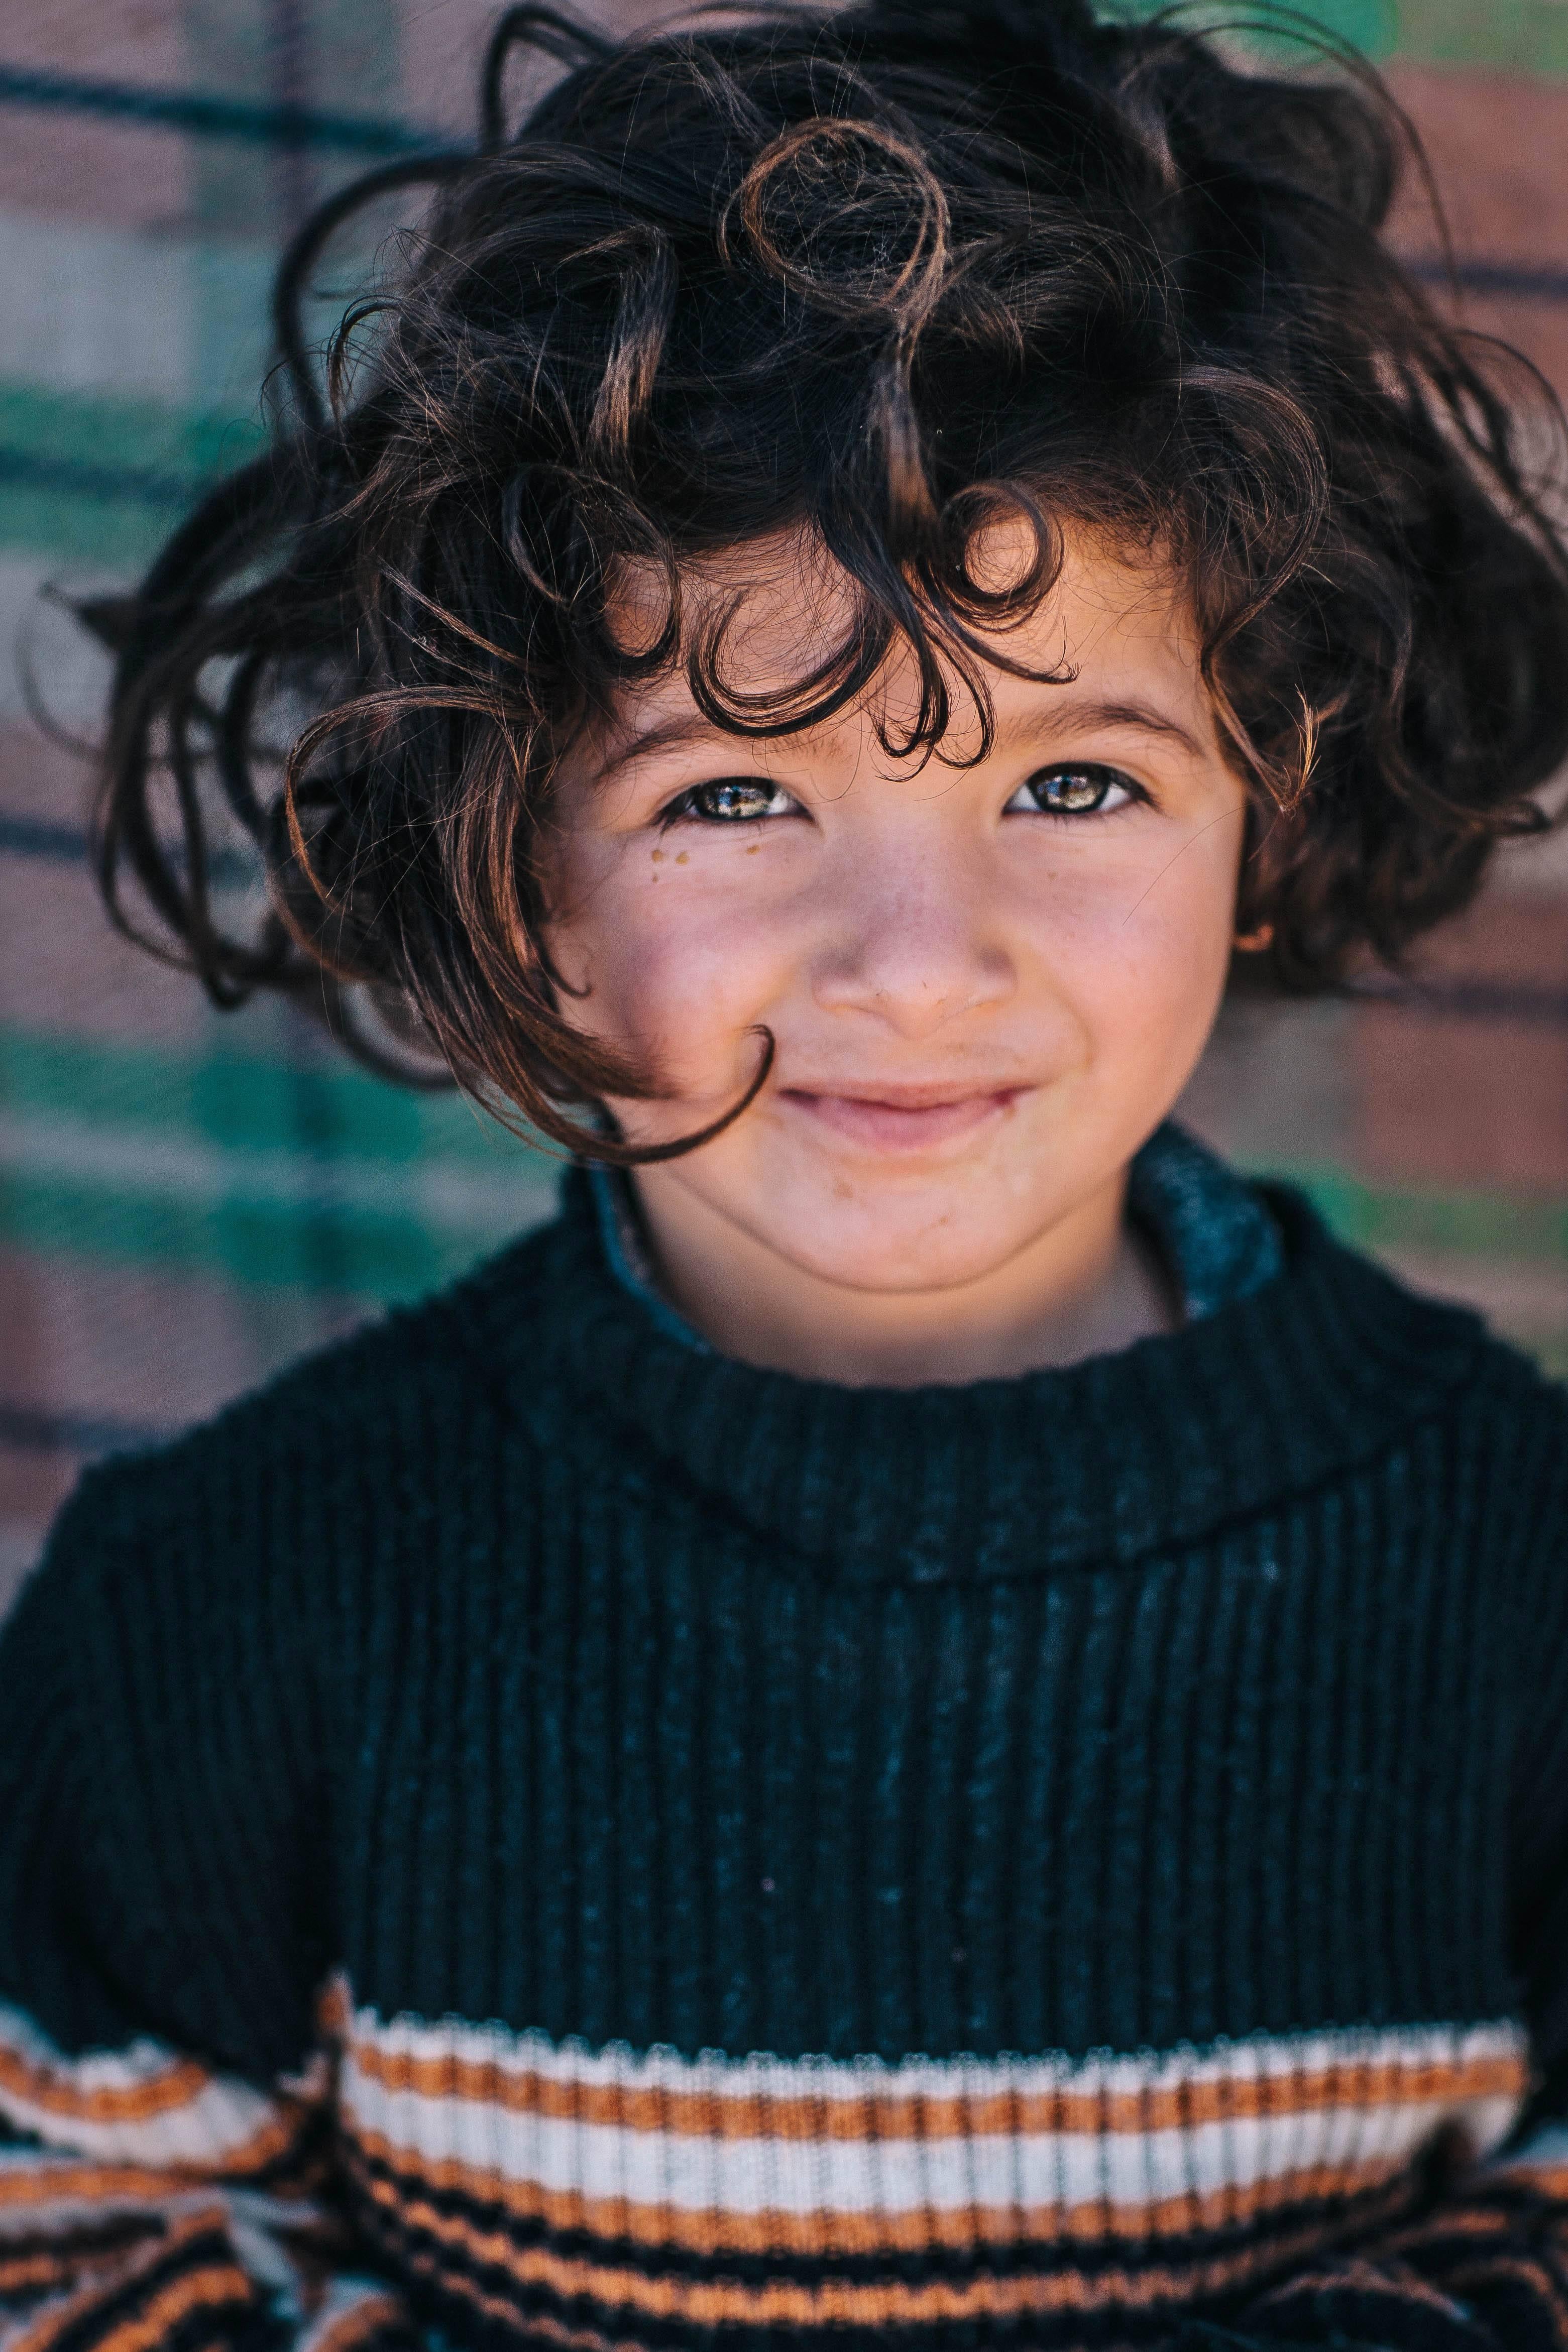 Syrisches Mädchen
Beqaa-Tal, 2015

Zack Whitfords Spezialität ist es, Gesichtsausdrücke und Emotionen in dem Moment einzufangen, in dem sie auftreten, und so wirklich einfühlsame Bilder zu schaffen. Der Blick des jungen syrischen Mädchens, das in